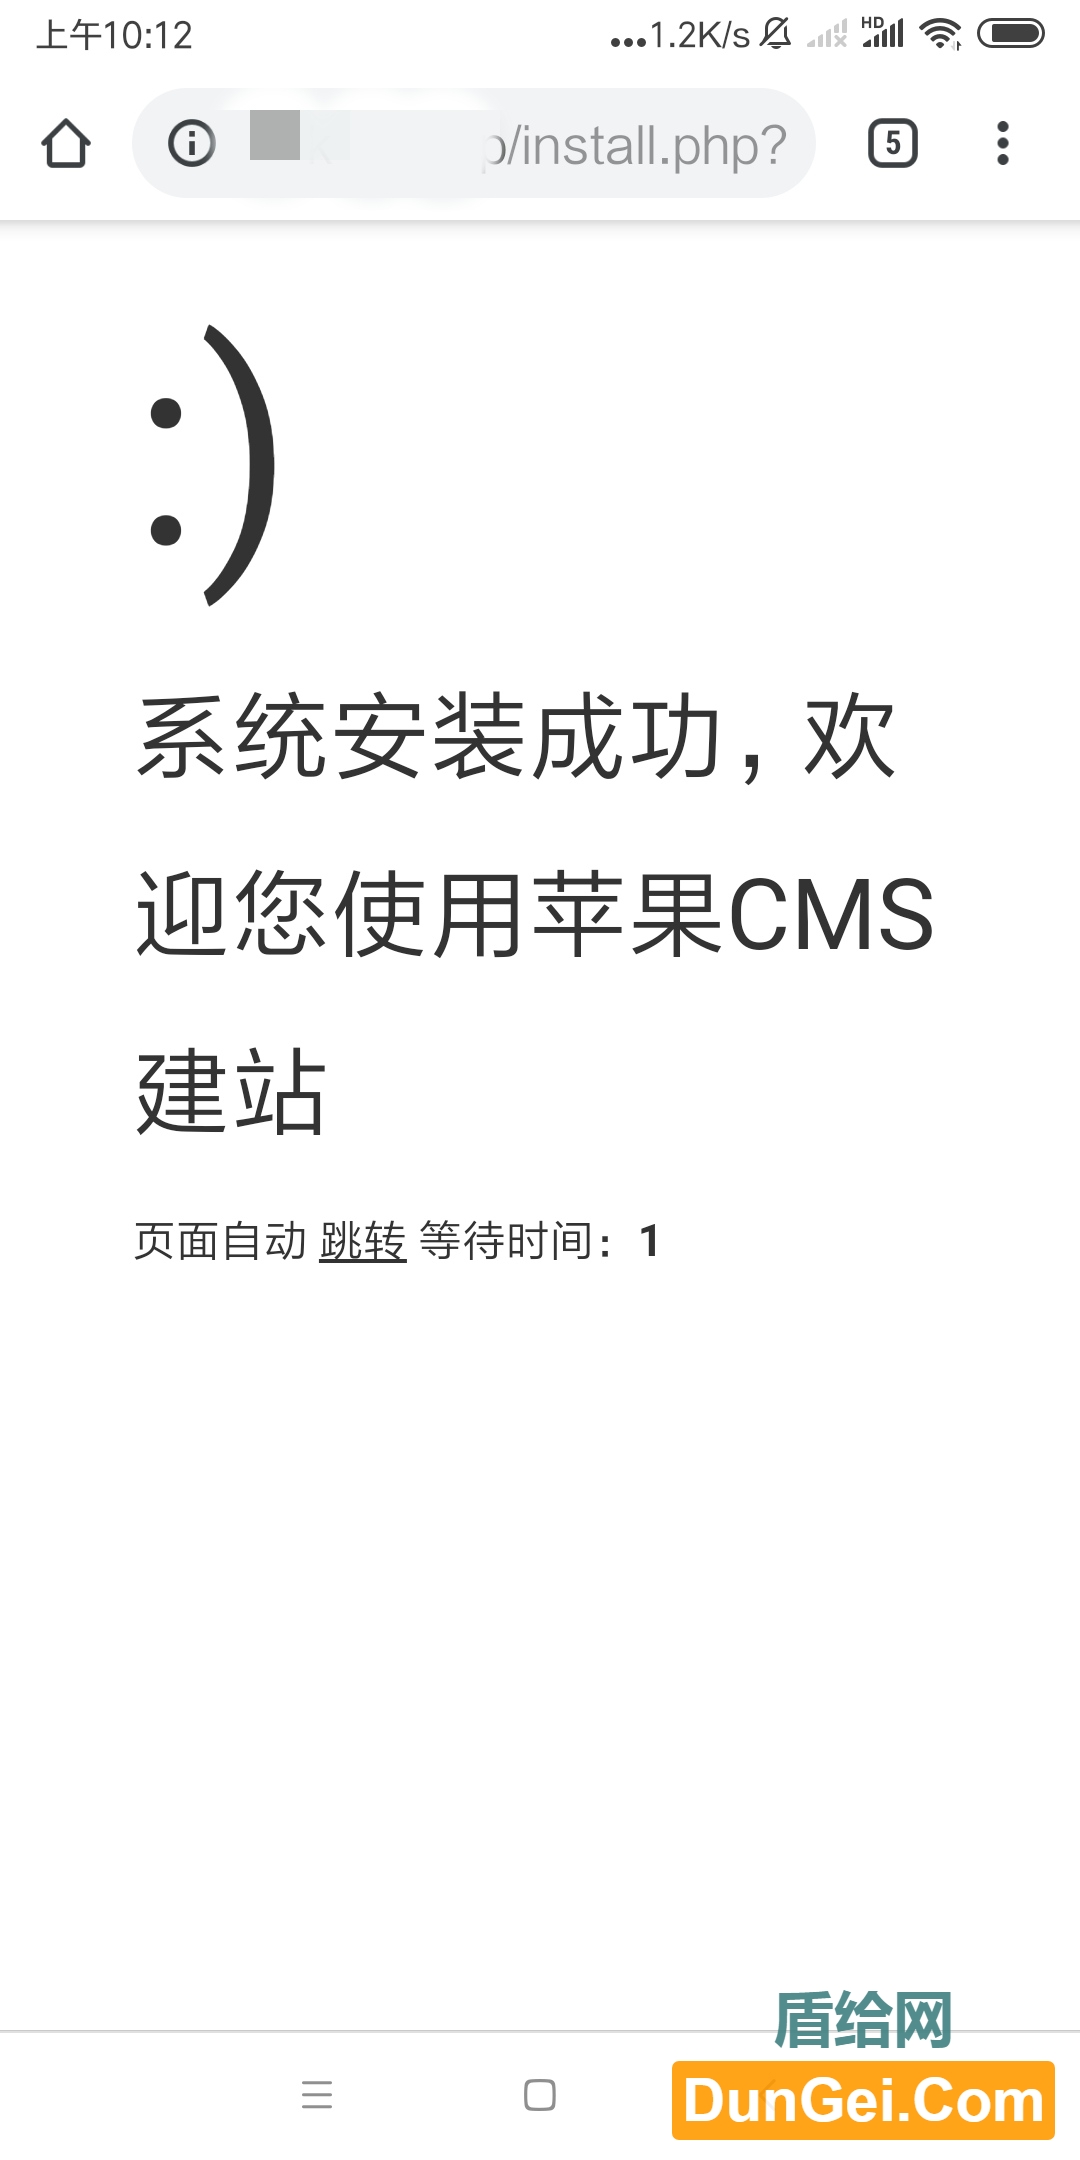 【苹果CMS技术教程】苹果CMS基础安装过程-度崩网-几度崩溃